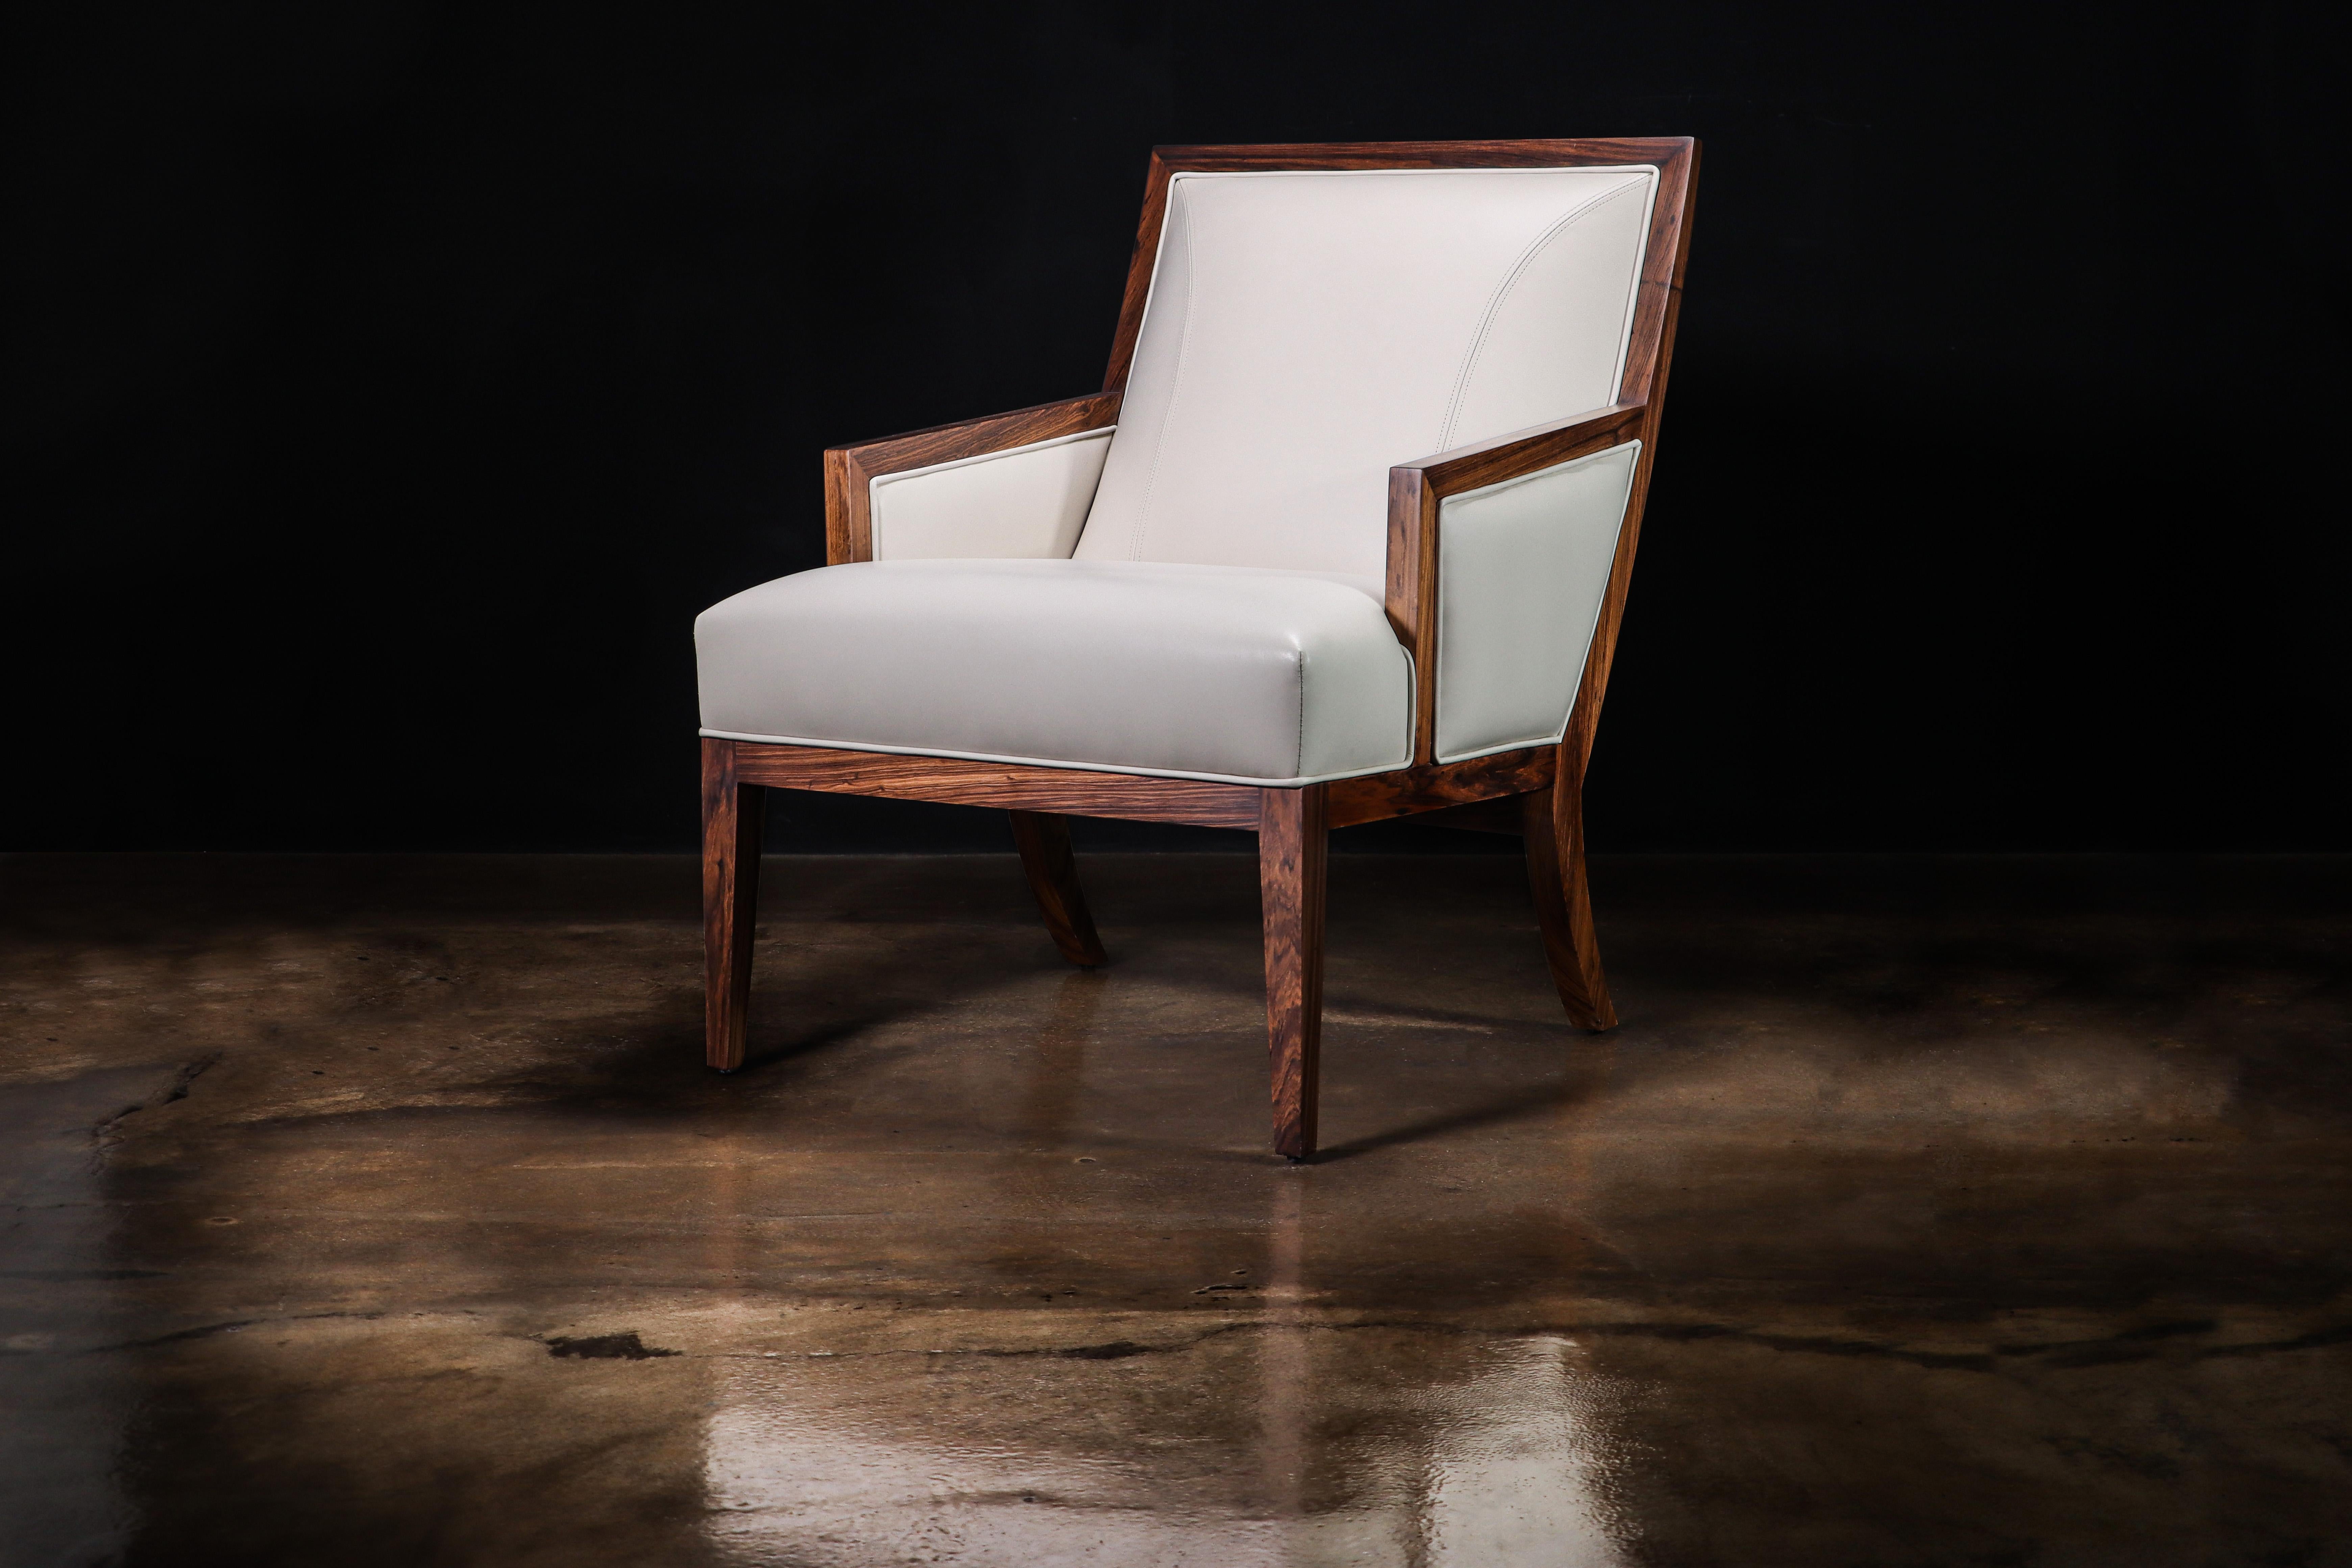 Belgrano Contemporary Lounge Chair aus Holz und weißem Leder von Costantini

Die Abmessungen sind: 27